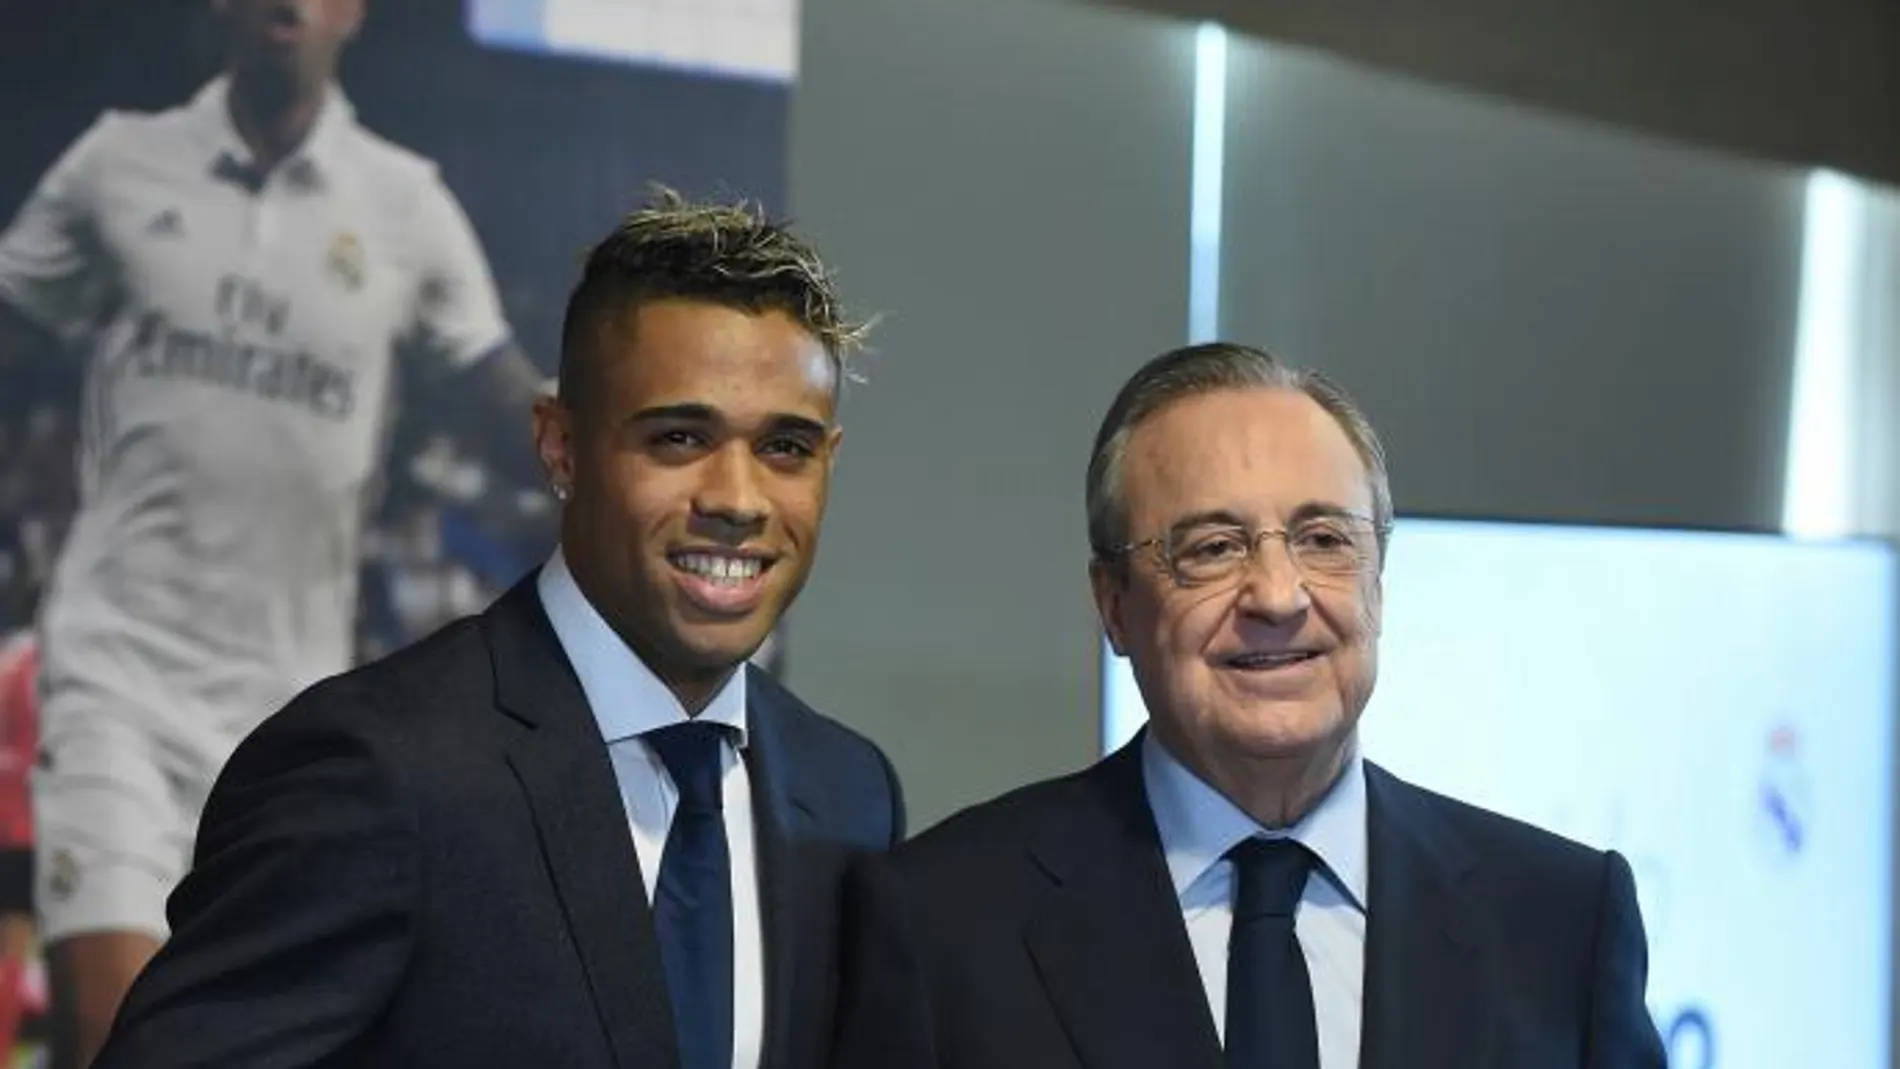 El delantero Mariano Díaz, acompañado por el presidente del Real Madrid, Florentino Pérez, durante su presentación como nuevo jugador de la entidad blanca / Foto: Efe